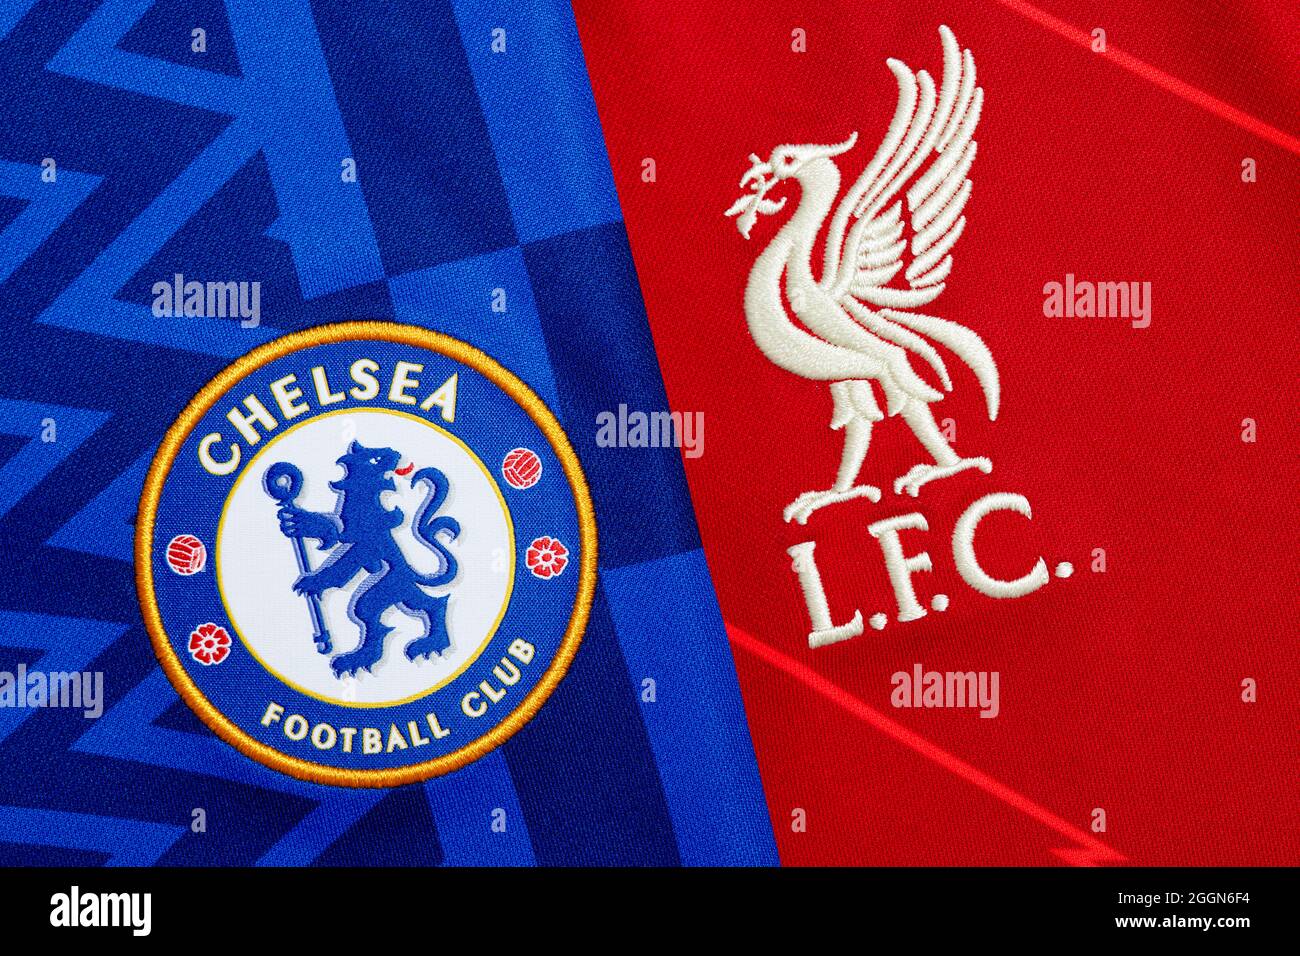 Nahaufnahme des Vereinswappens von Liverpool & Chelsea Stockfoto